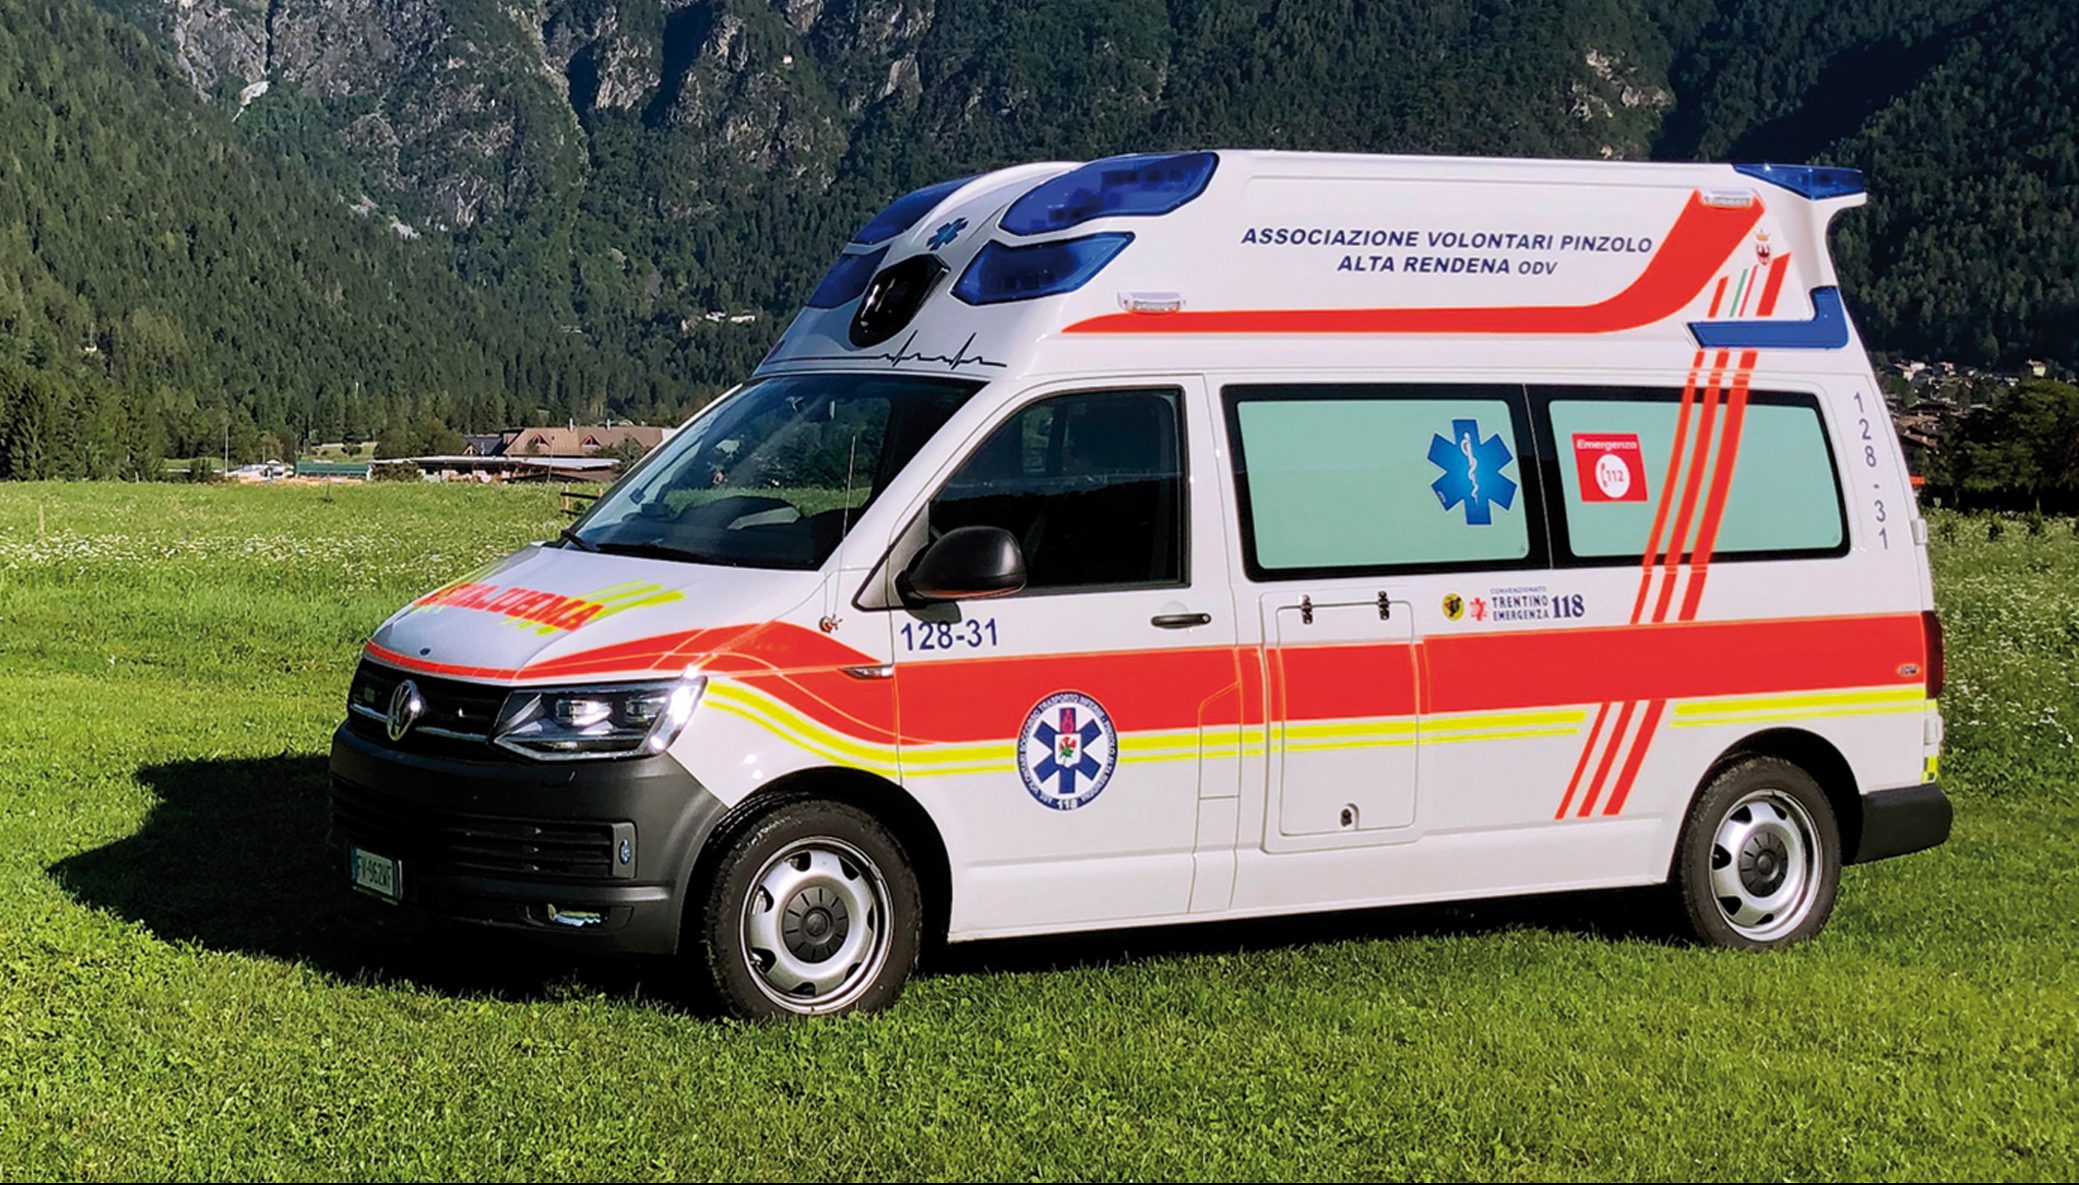 REAS 2019, EDM ambulanze ha tante novità, per tutti | Emergency Live 10